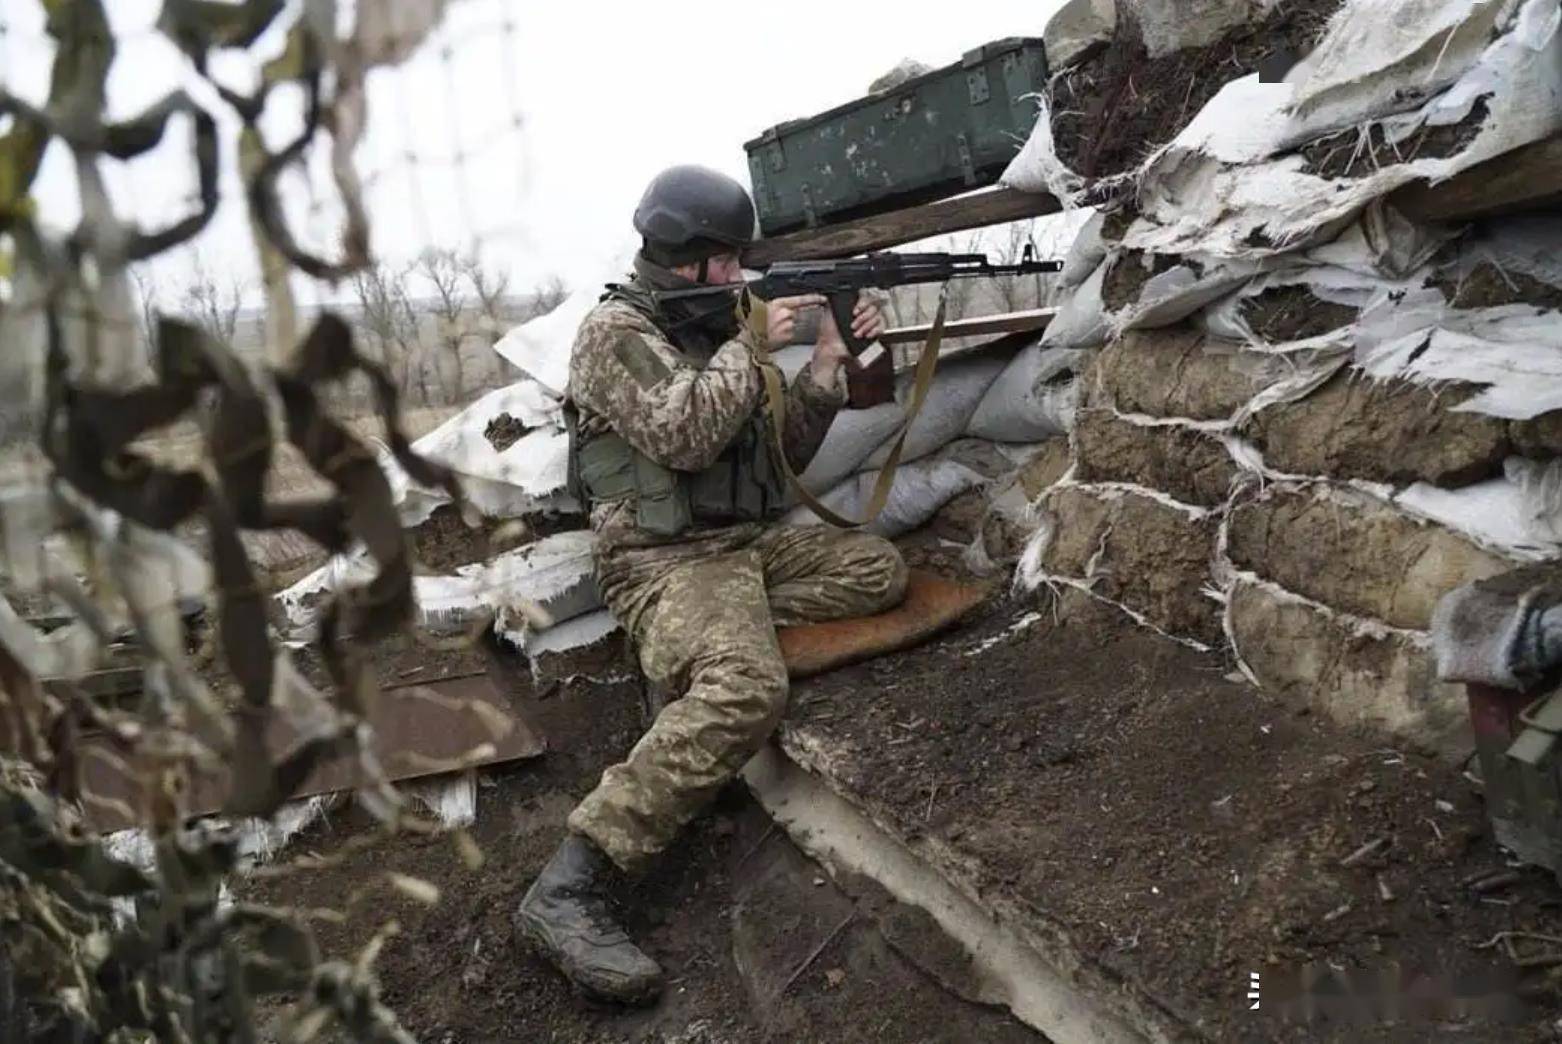 英美加强介入力度,乌克兰开始反击,炸毁俄军顿巴斯一处指挥部